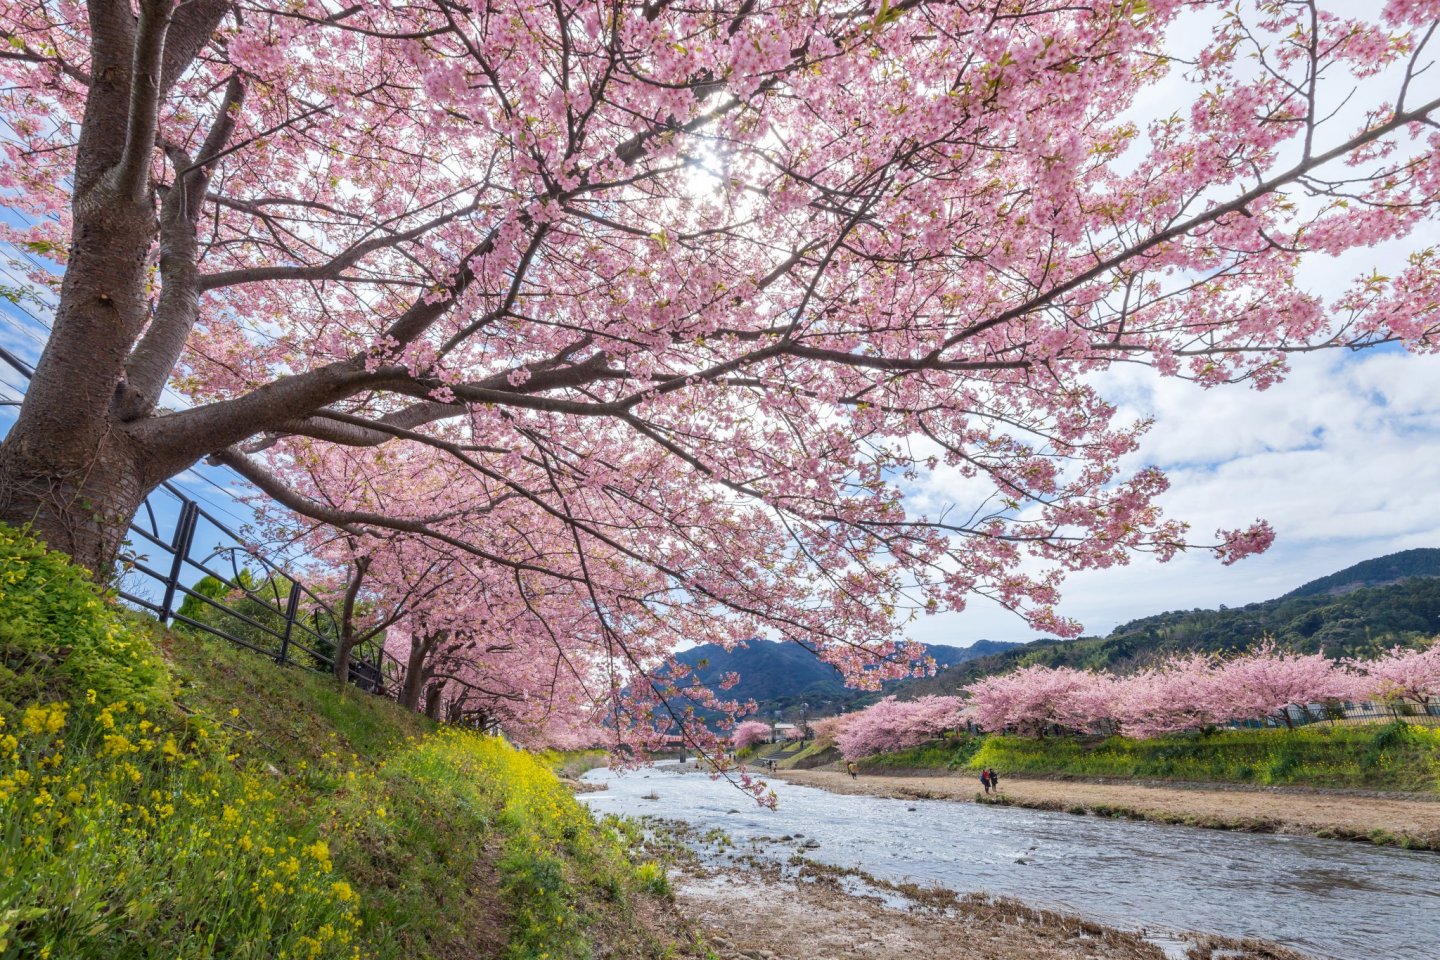 Mekarnya sakura Kawazu di sepanjang sungai adalah salah satu tontonan paling spektakuler di Jepang